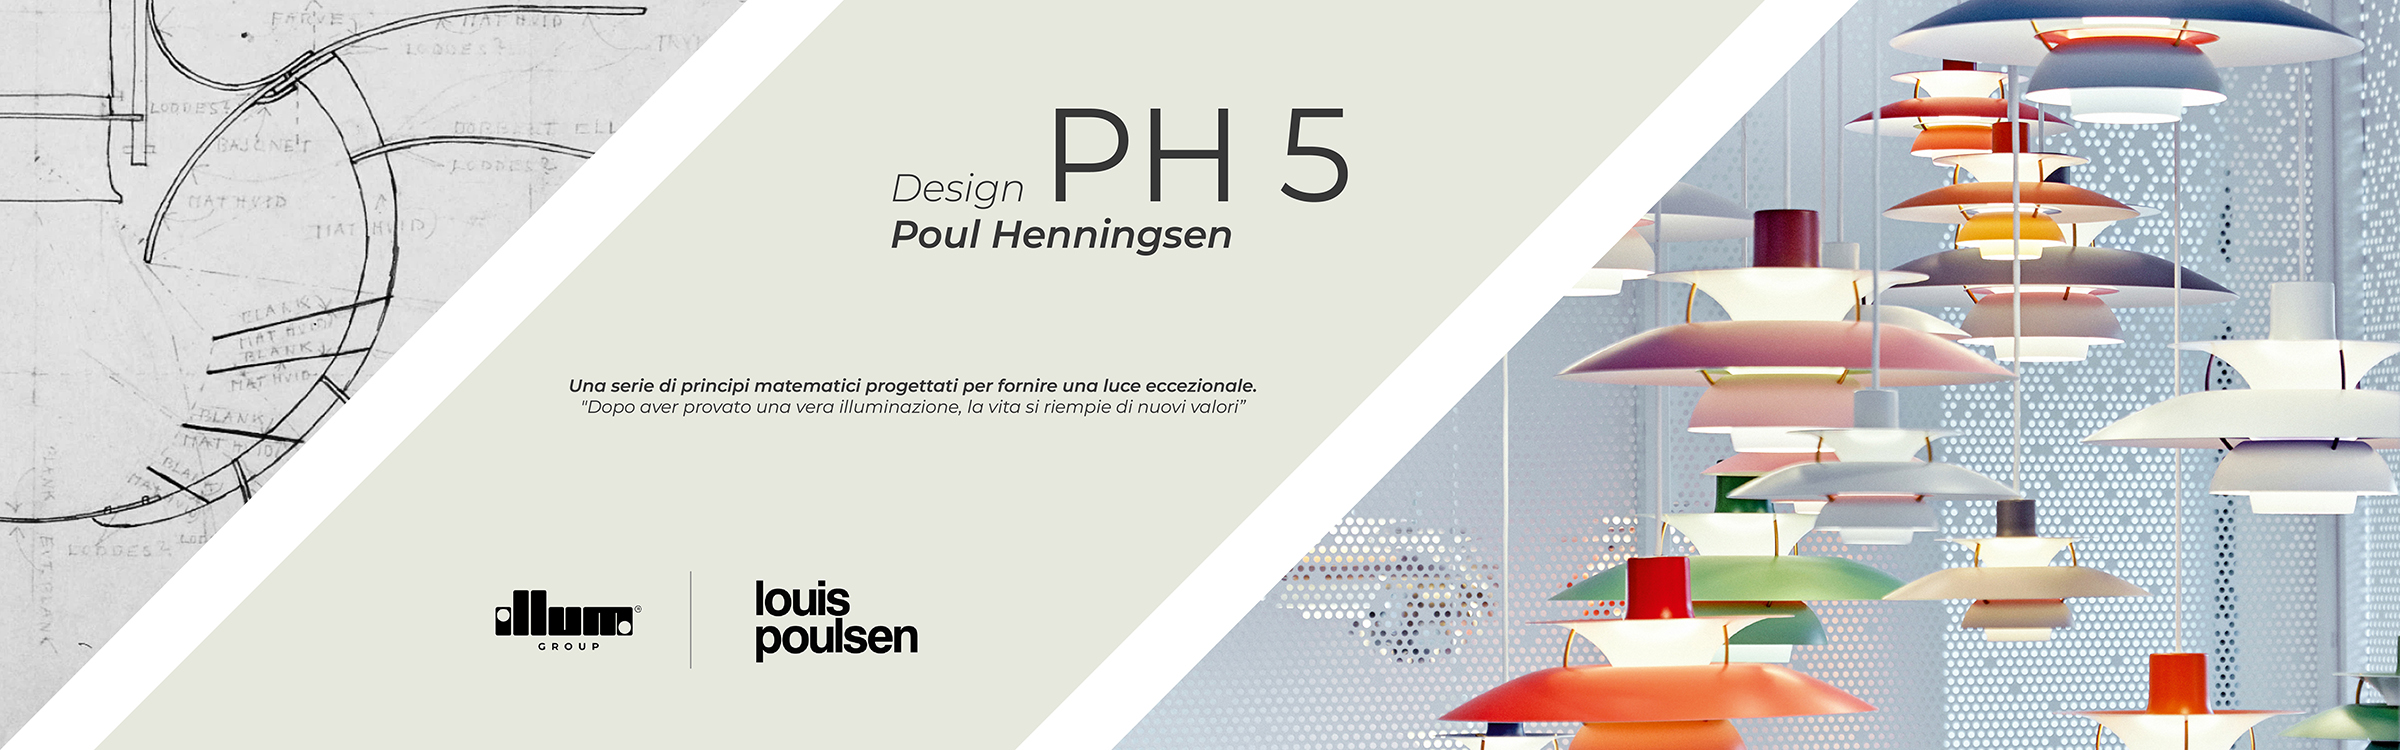 PH 5 Louis Poulsen